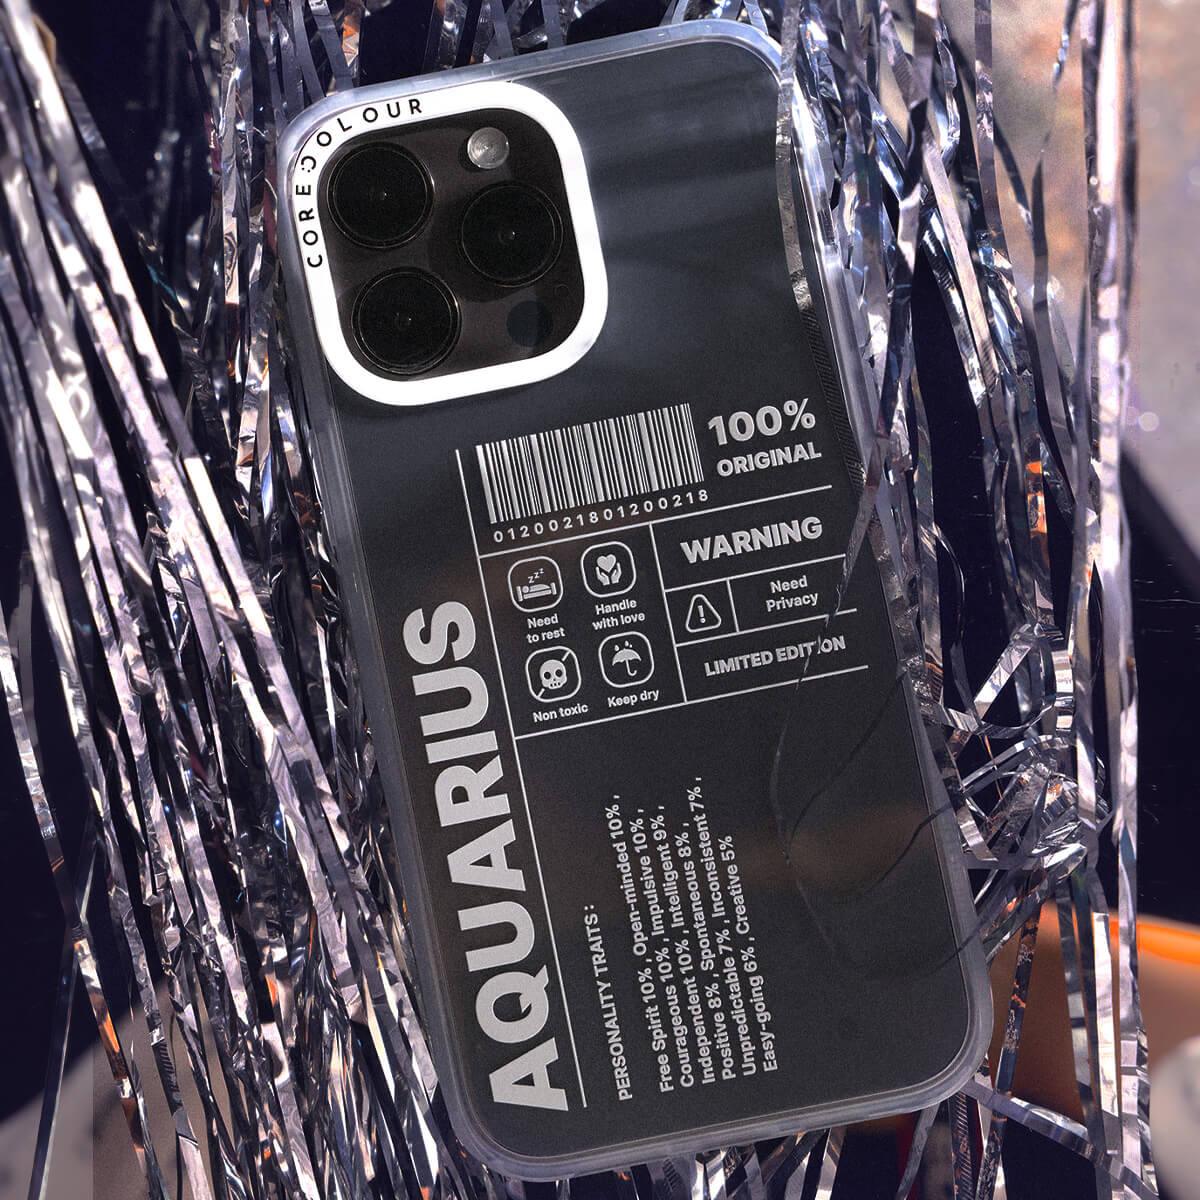 iPhone 12 Warning Aquarius Phone Case - CORECOLOUR